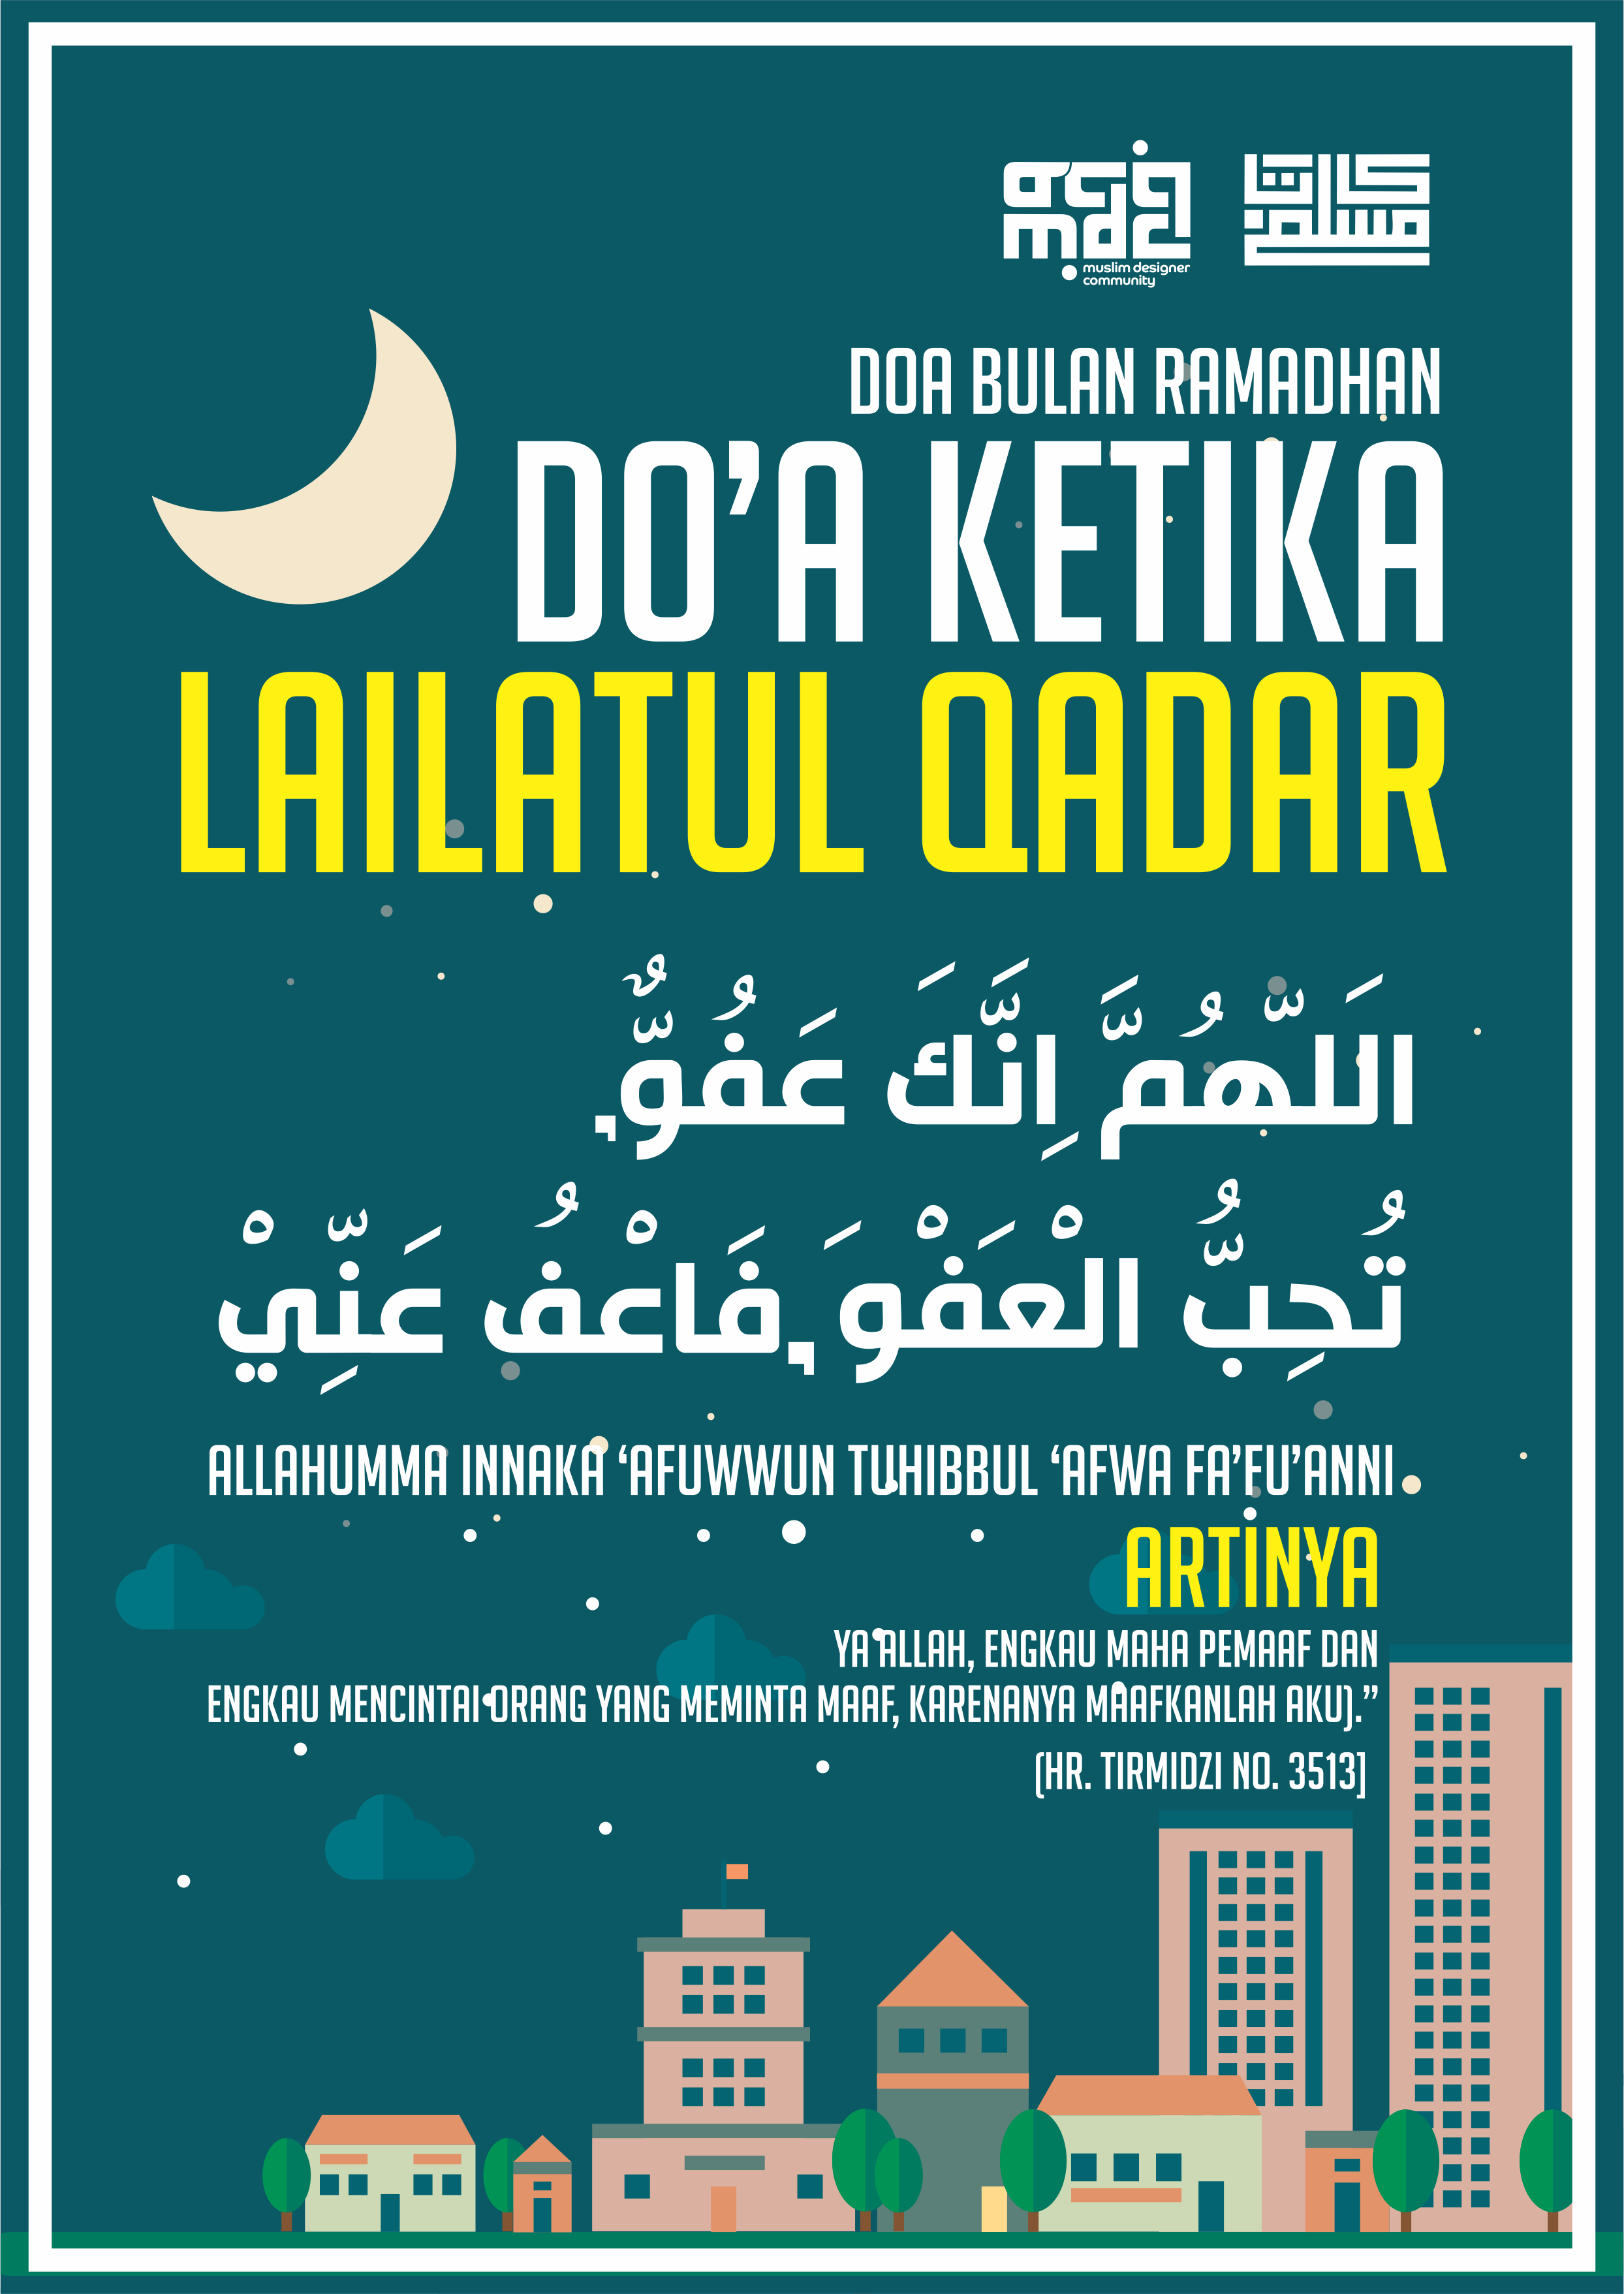 Download Gratis Desain Poster Dakwah Karya Kata Muslim 